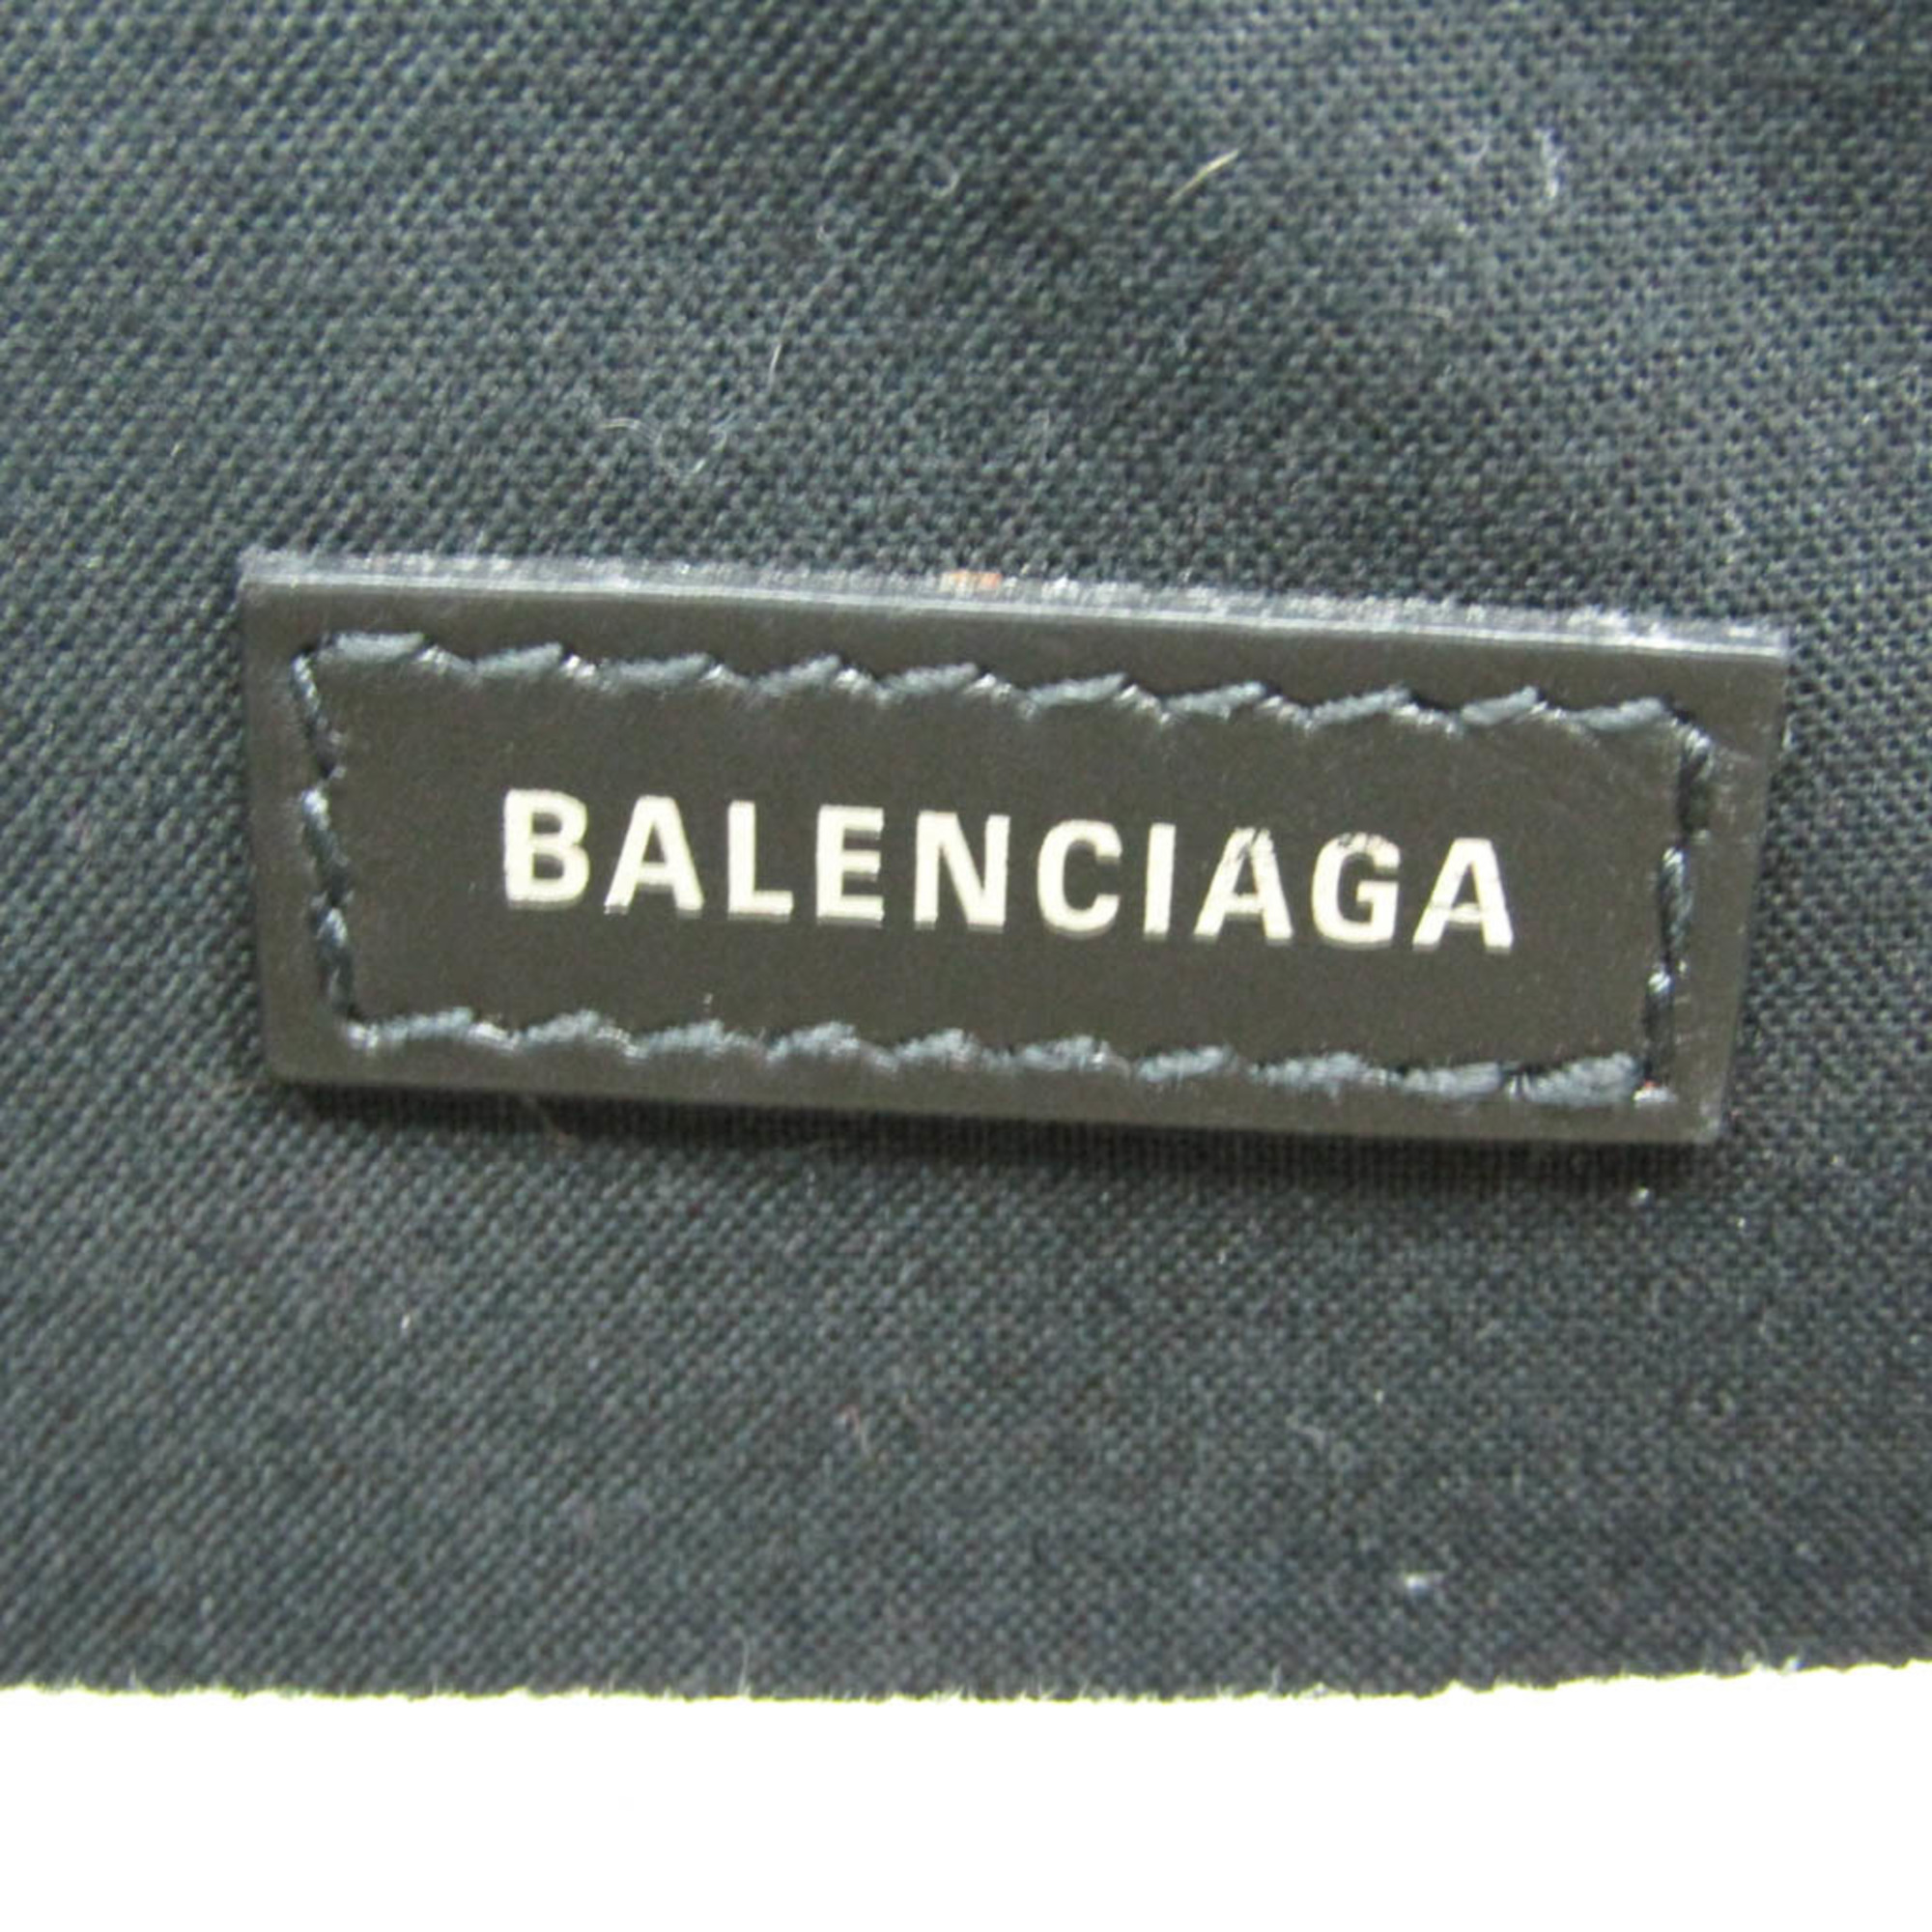 バレンシアガ(Balenciaga) ネイビー・ポシェット 339937 メンズ,レディース キャンバス,レザー ショルダーバッグ ブラック,オフホワイト